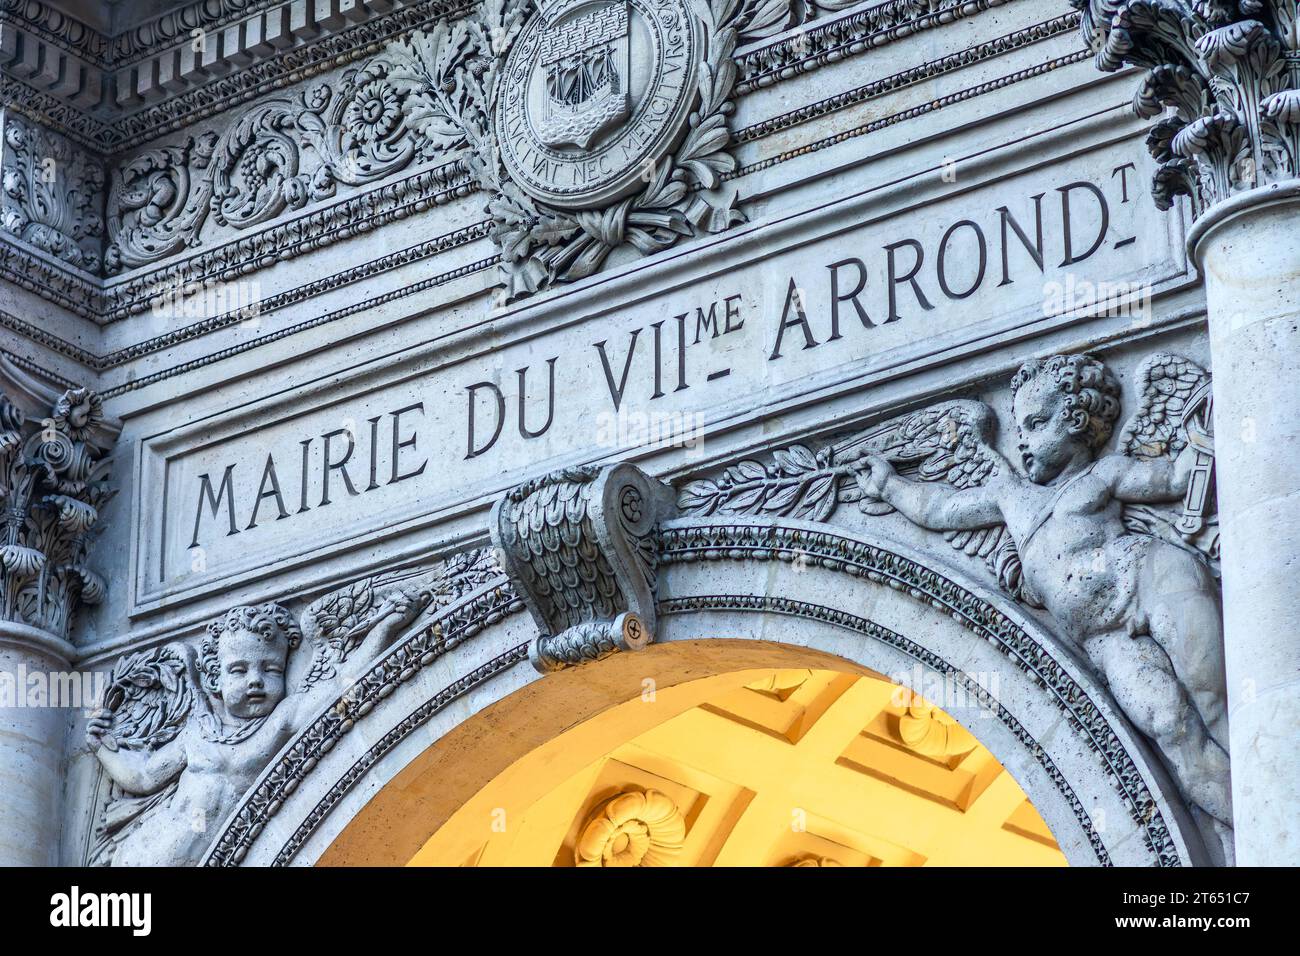 Dettagli classici sopra l'ingresso alla Mairie (municipio) del 7° arrondissement di Parigi, Francia. Foto Stock